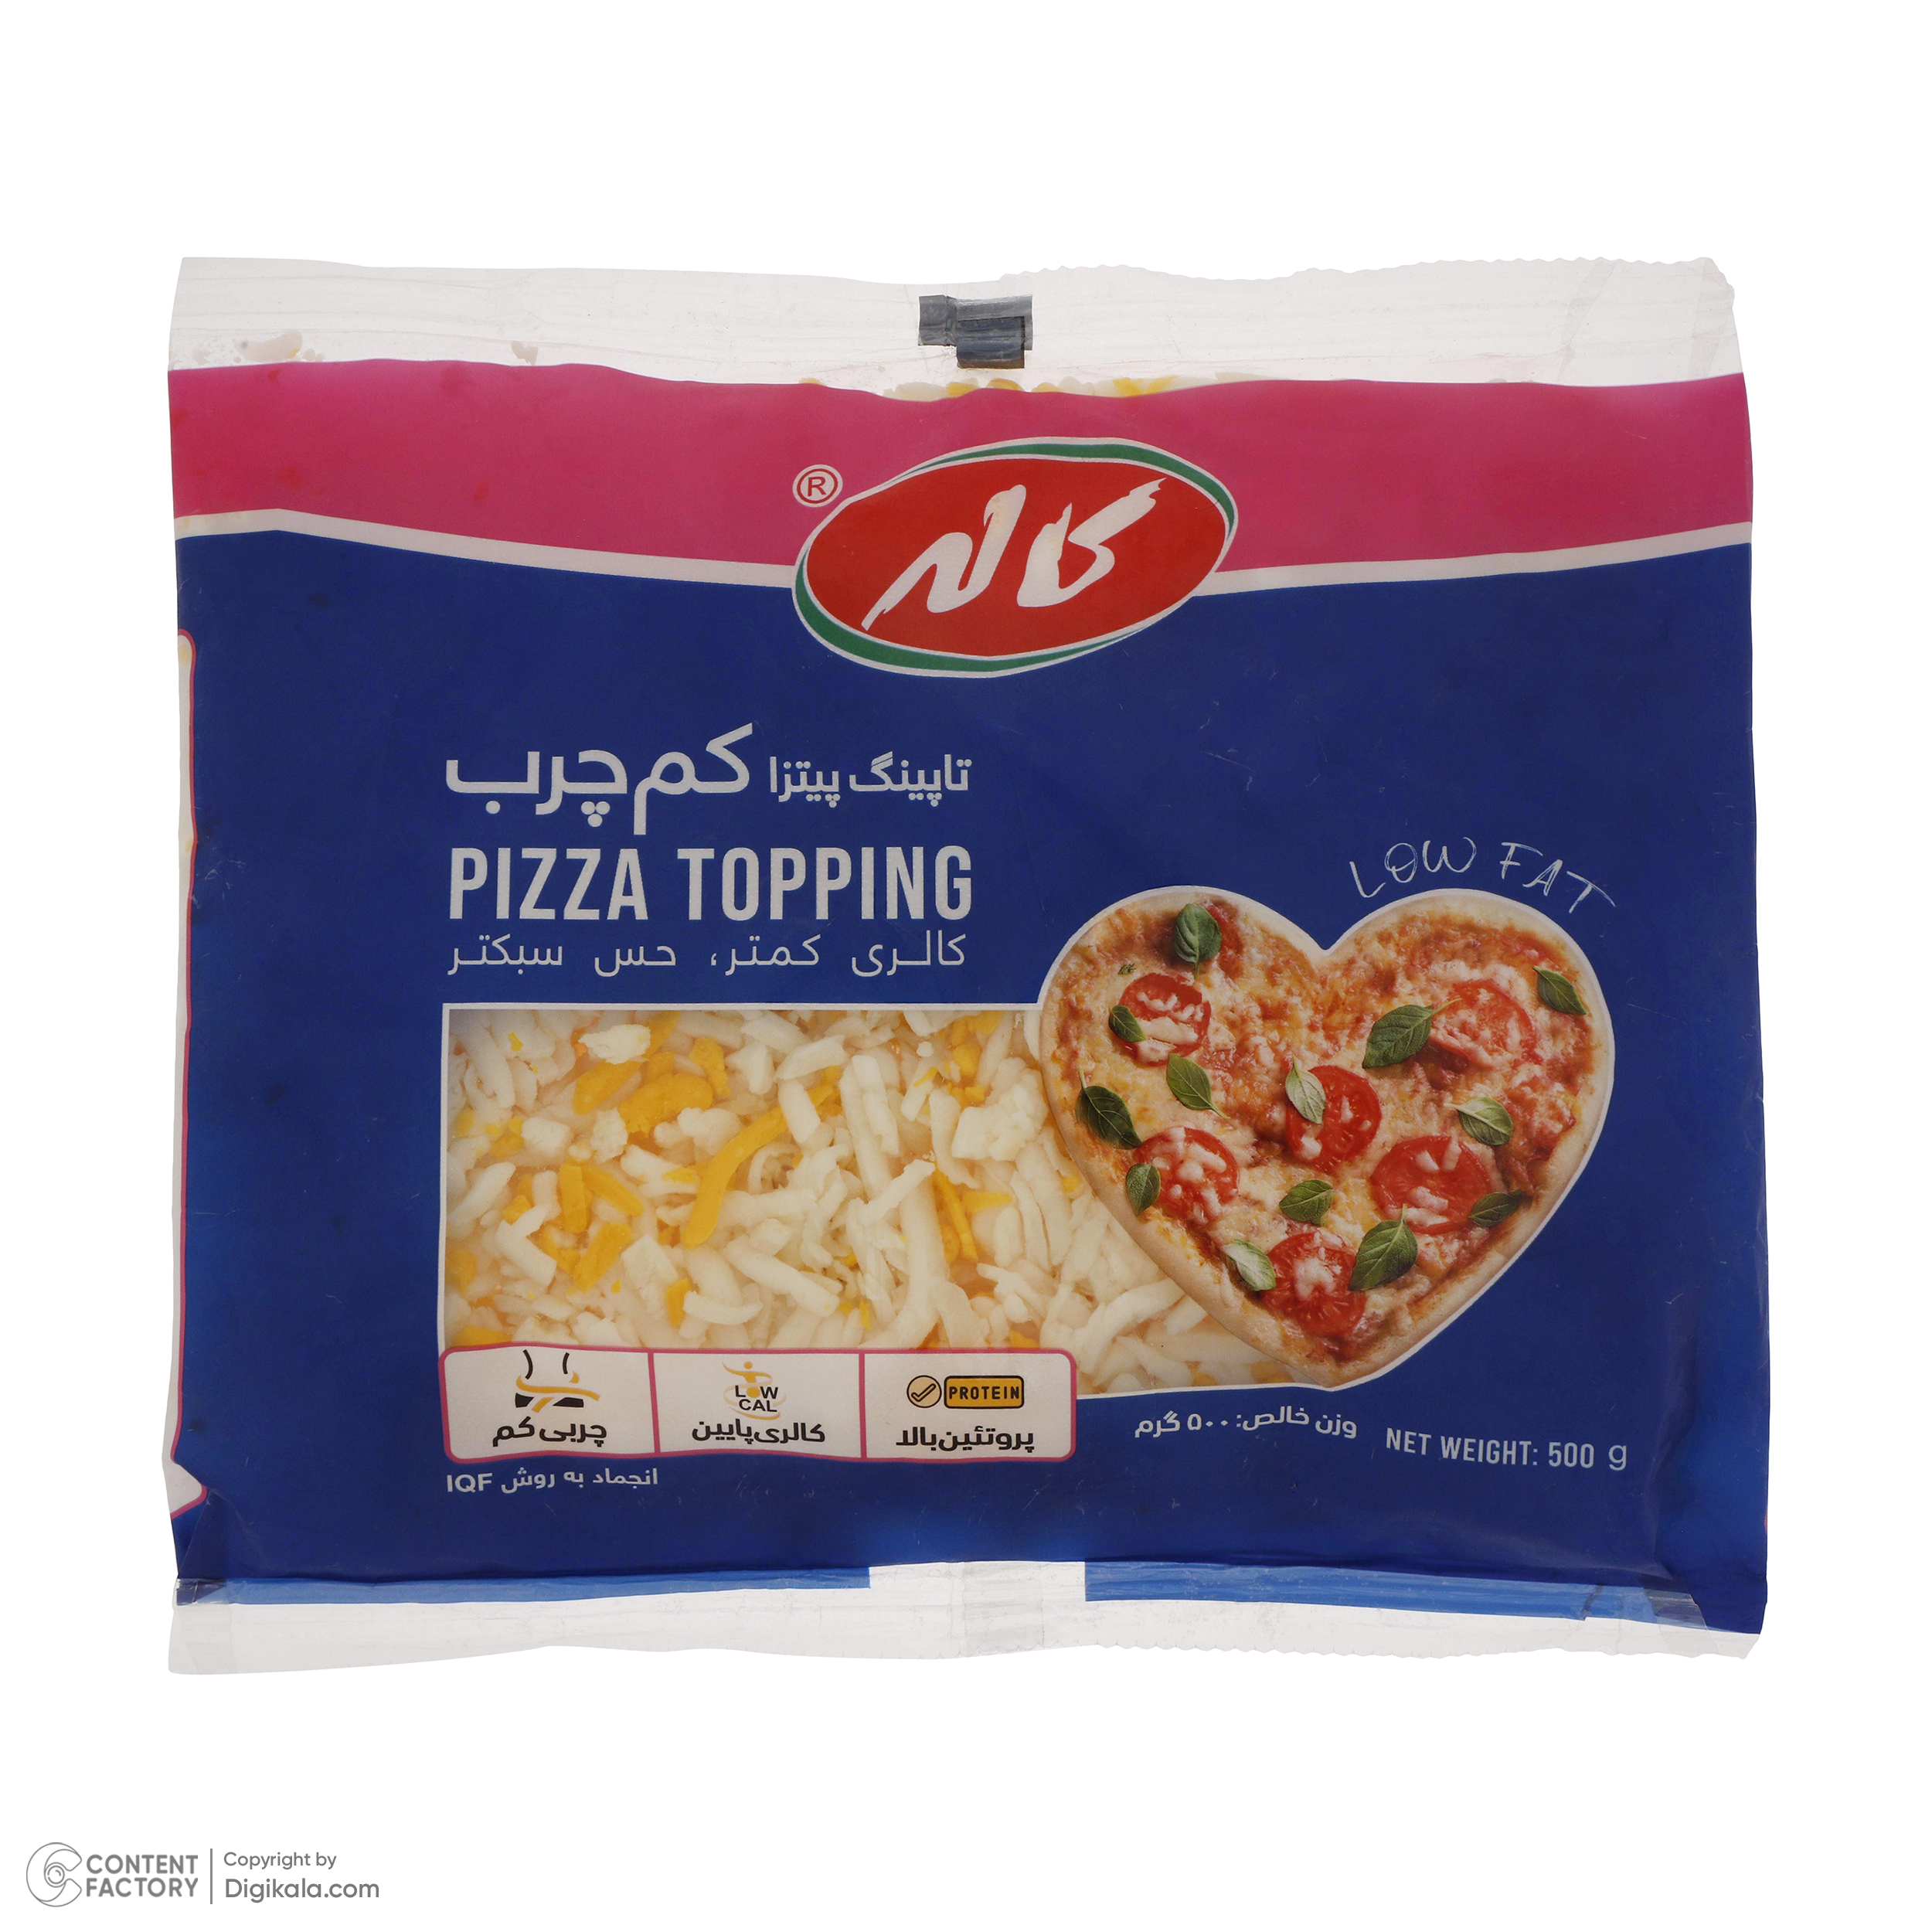 پنیر تاپینگ پیتزا کم چرب کاله - 500 گرم